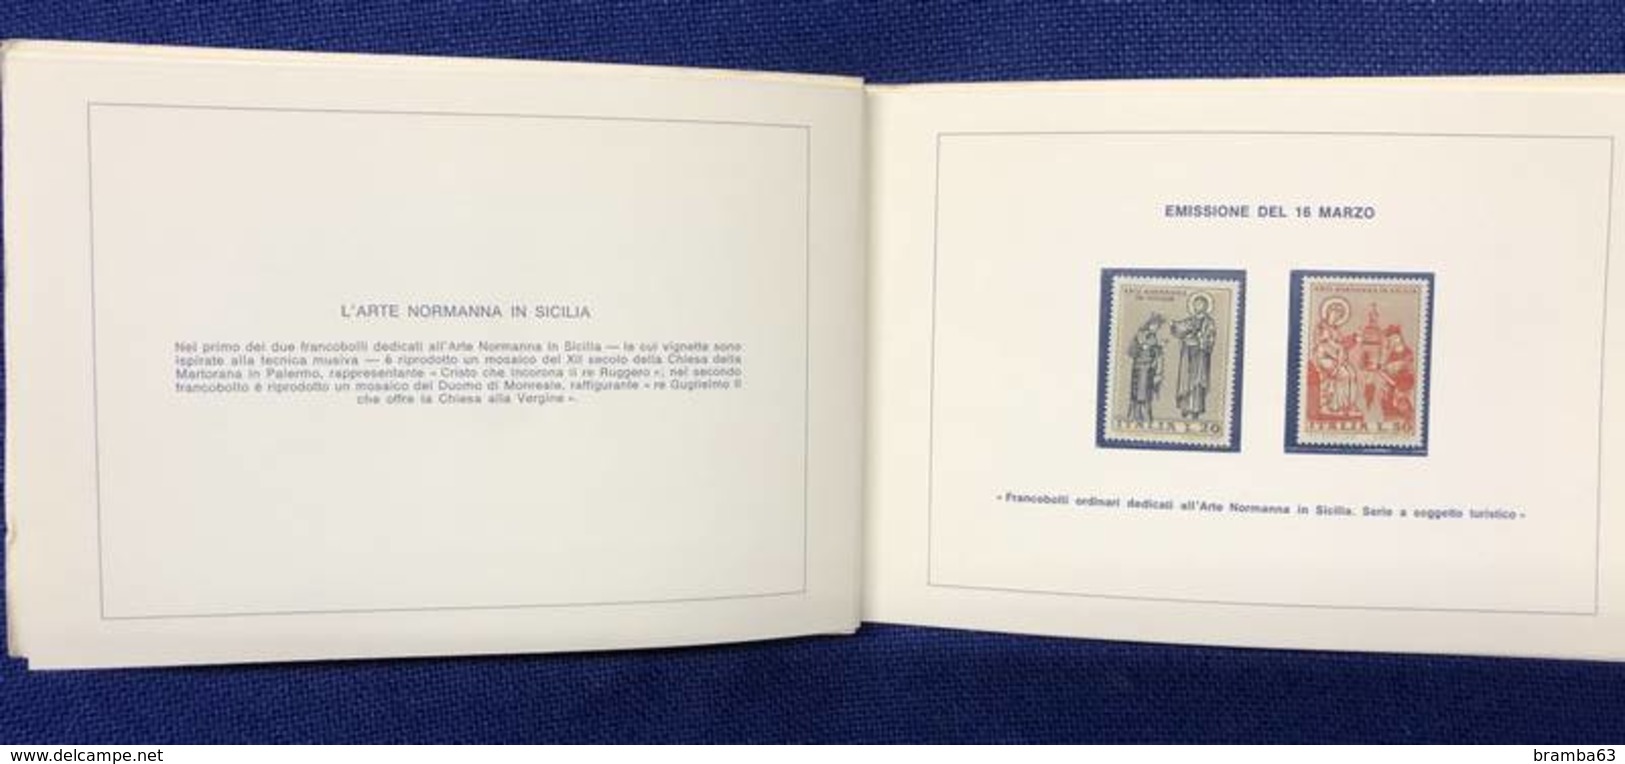 1974 Libretto Francobolli Emessi Amministrazione Postale Italiana - Completo Nuovo (come Da Scansione) - Full Years